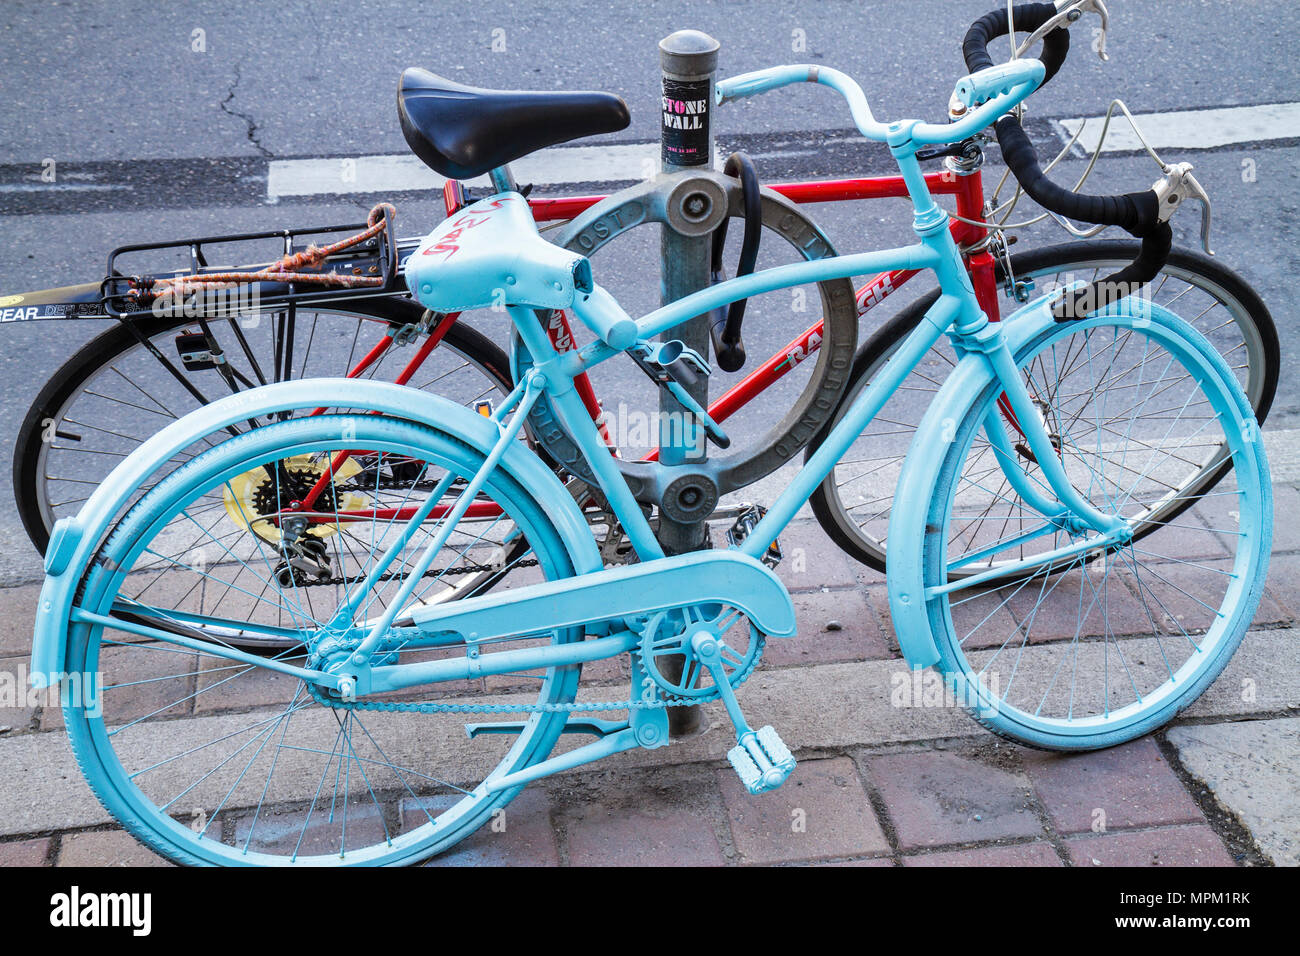 Toronto Canada, Spadina Avenue, quartier de Chinatown, vélo abandonné, vélo, équitation, vélo, cavalier, repeint, le bon projet de vélo, bleu pastel, Civic Banque D'Images